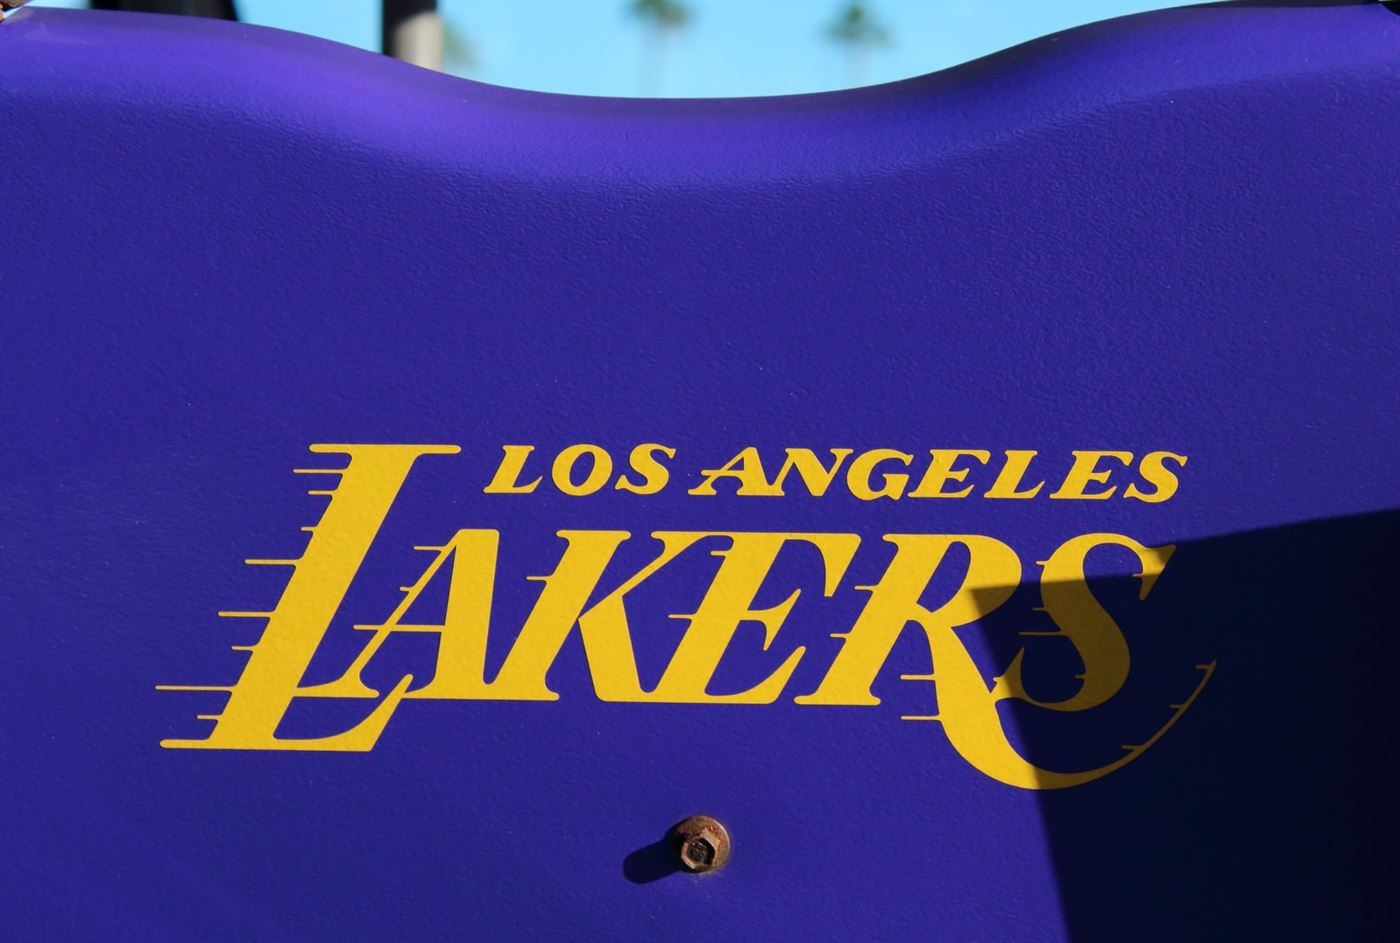 Los_Angeles_Lakers,_Newport.JPG